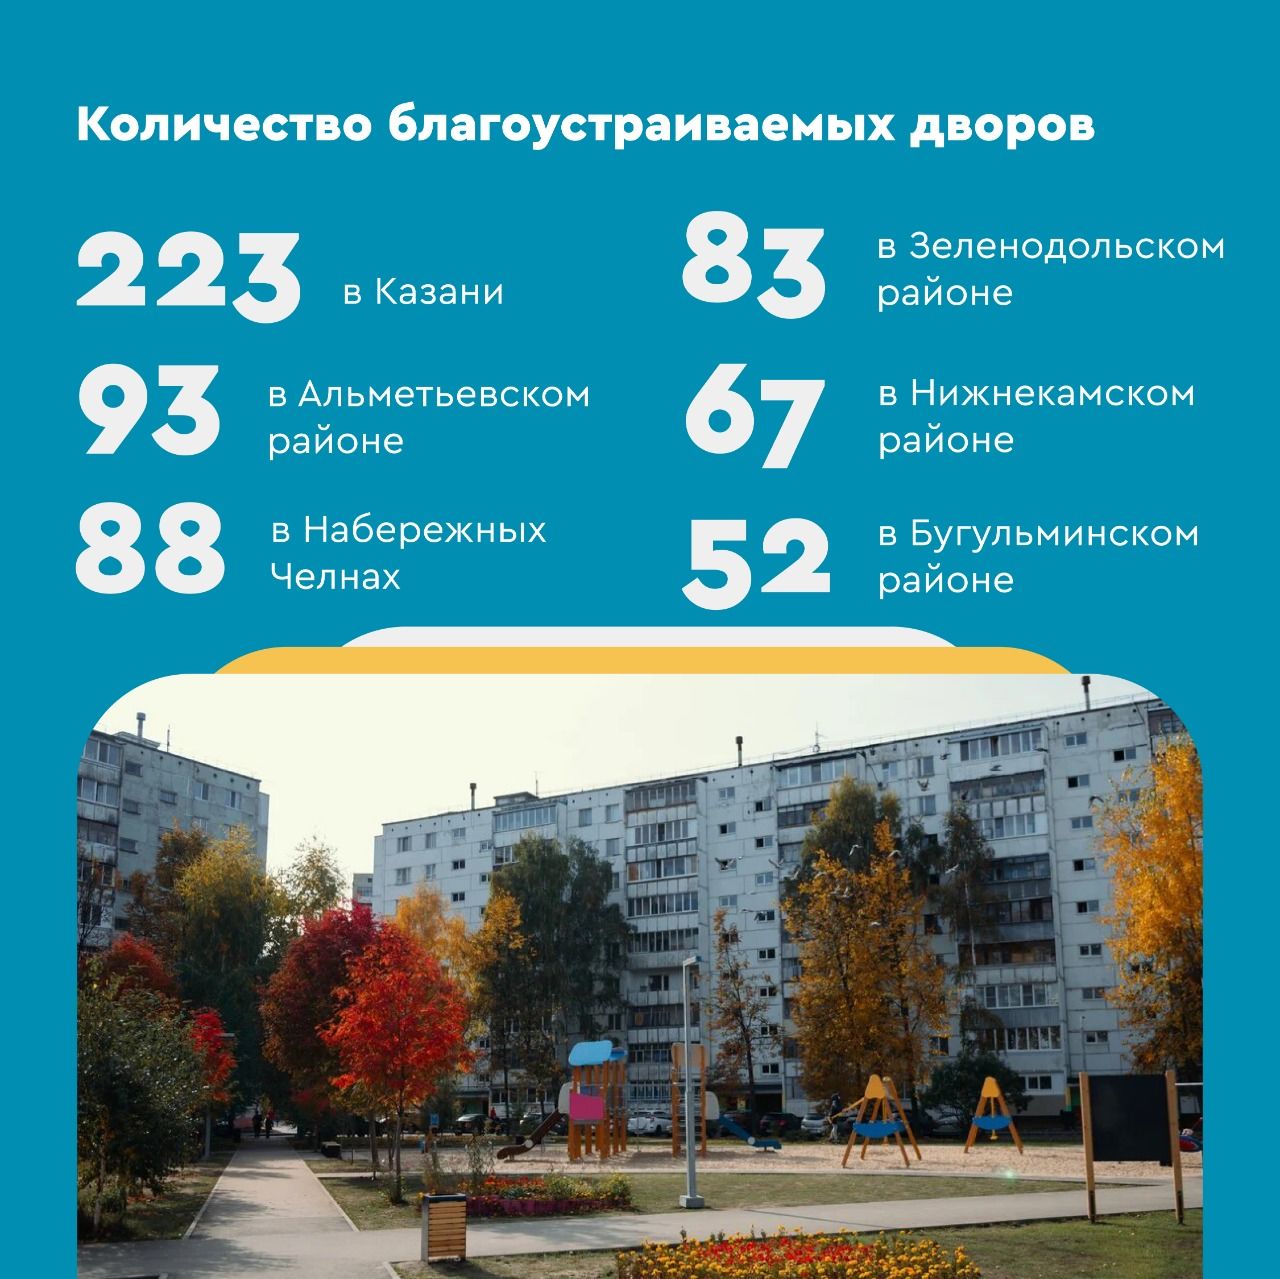 В Спасском районе по программе « Наш двор» благоустроят 8 дворов